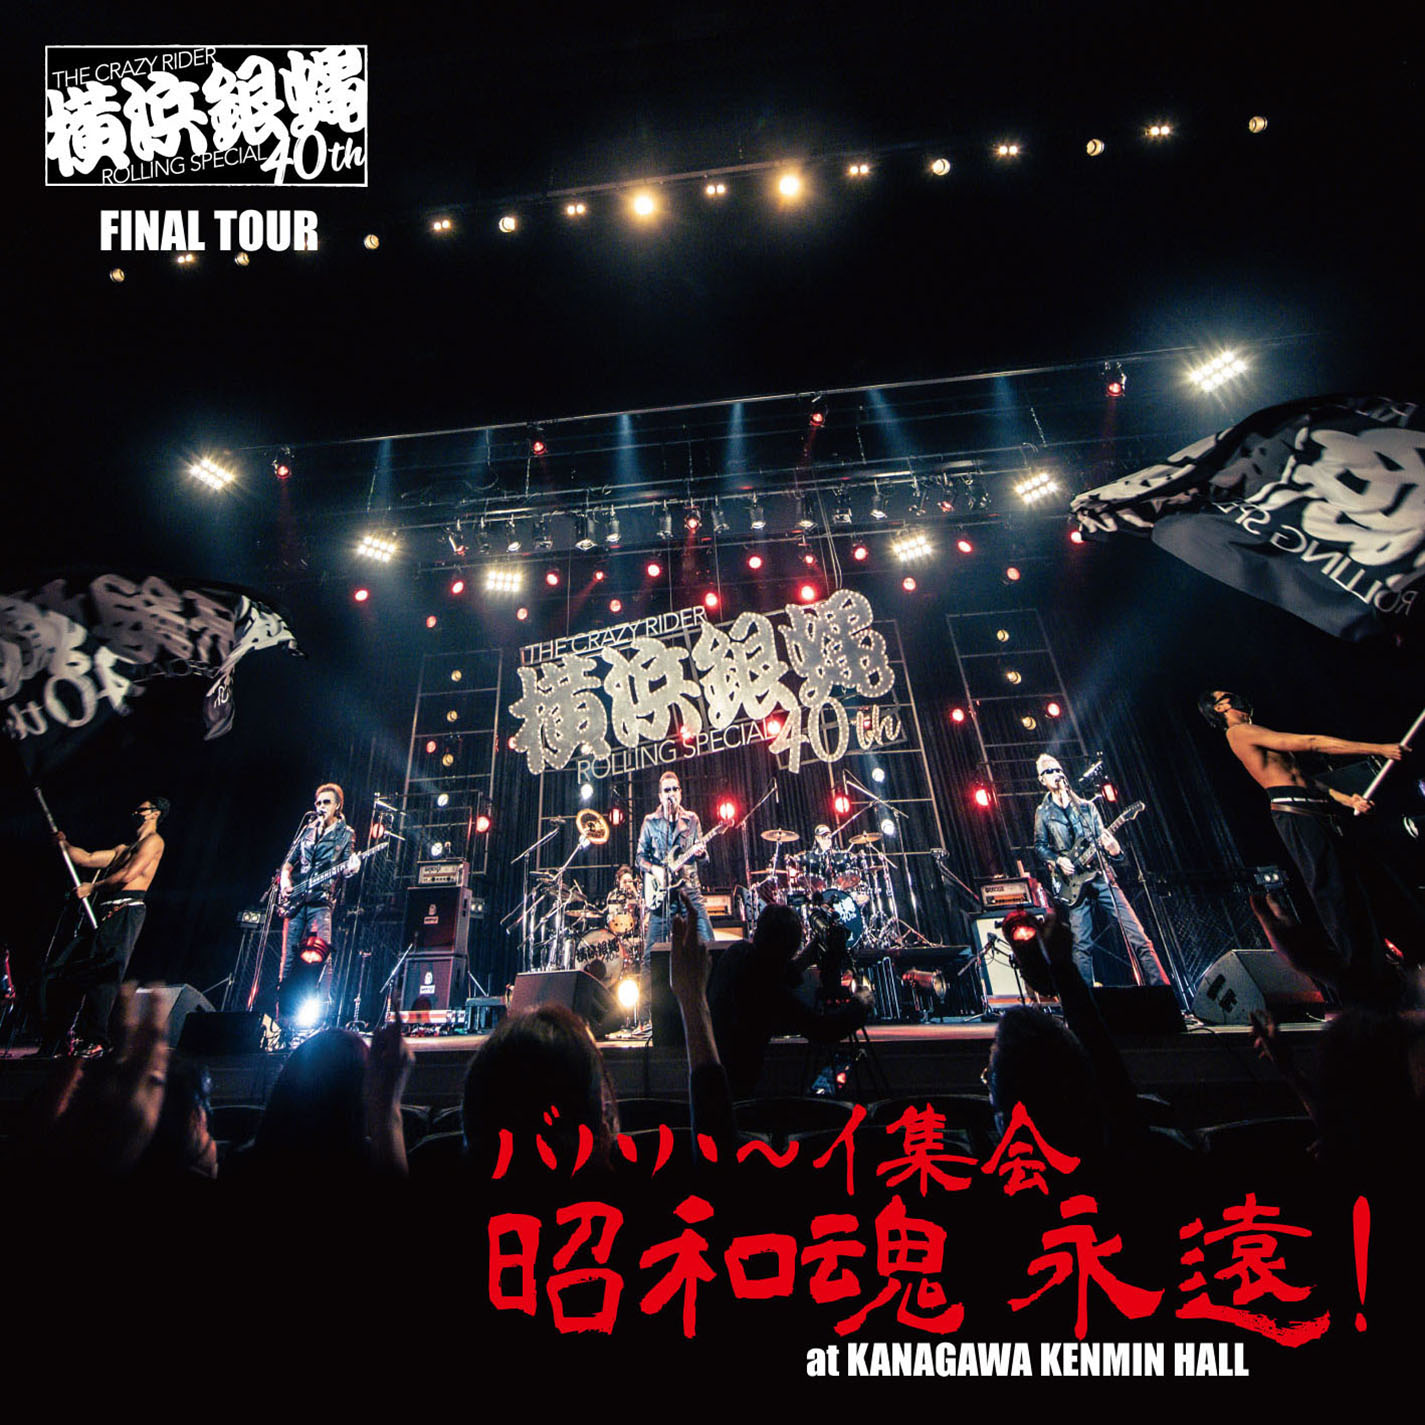 横浜銀蝿40th 2020完全復活ライブ「THE 配信!」DVD BOX - ミュージック